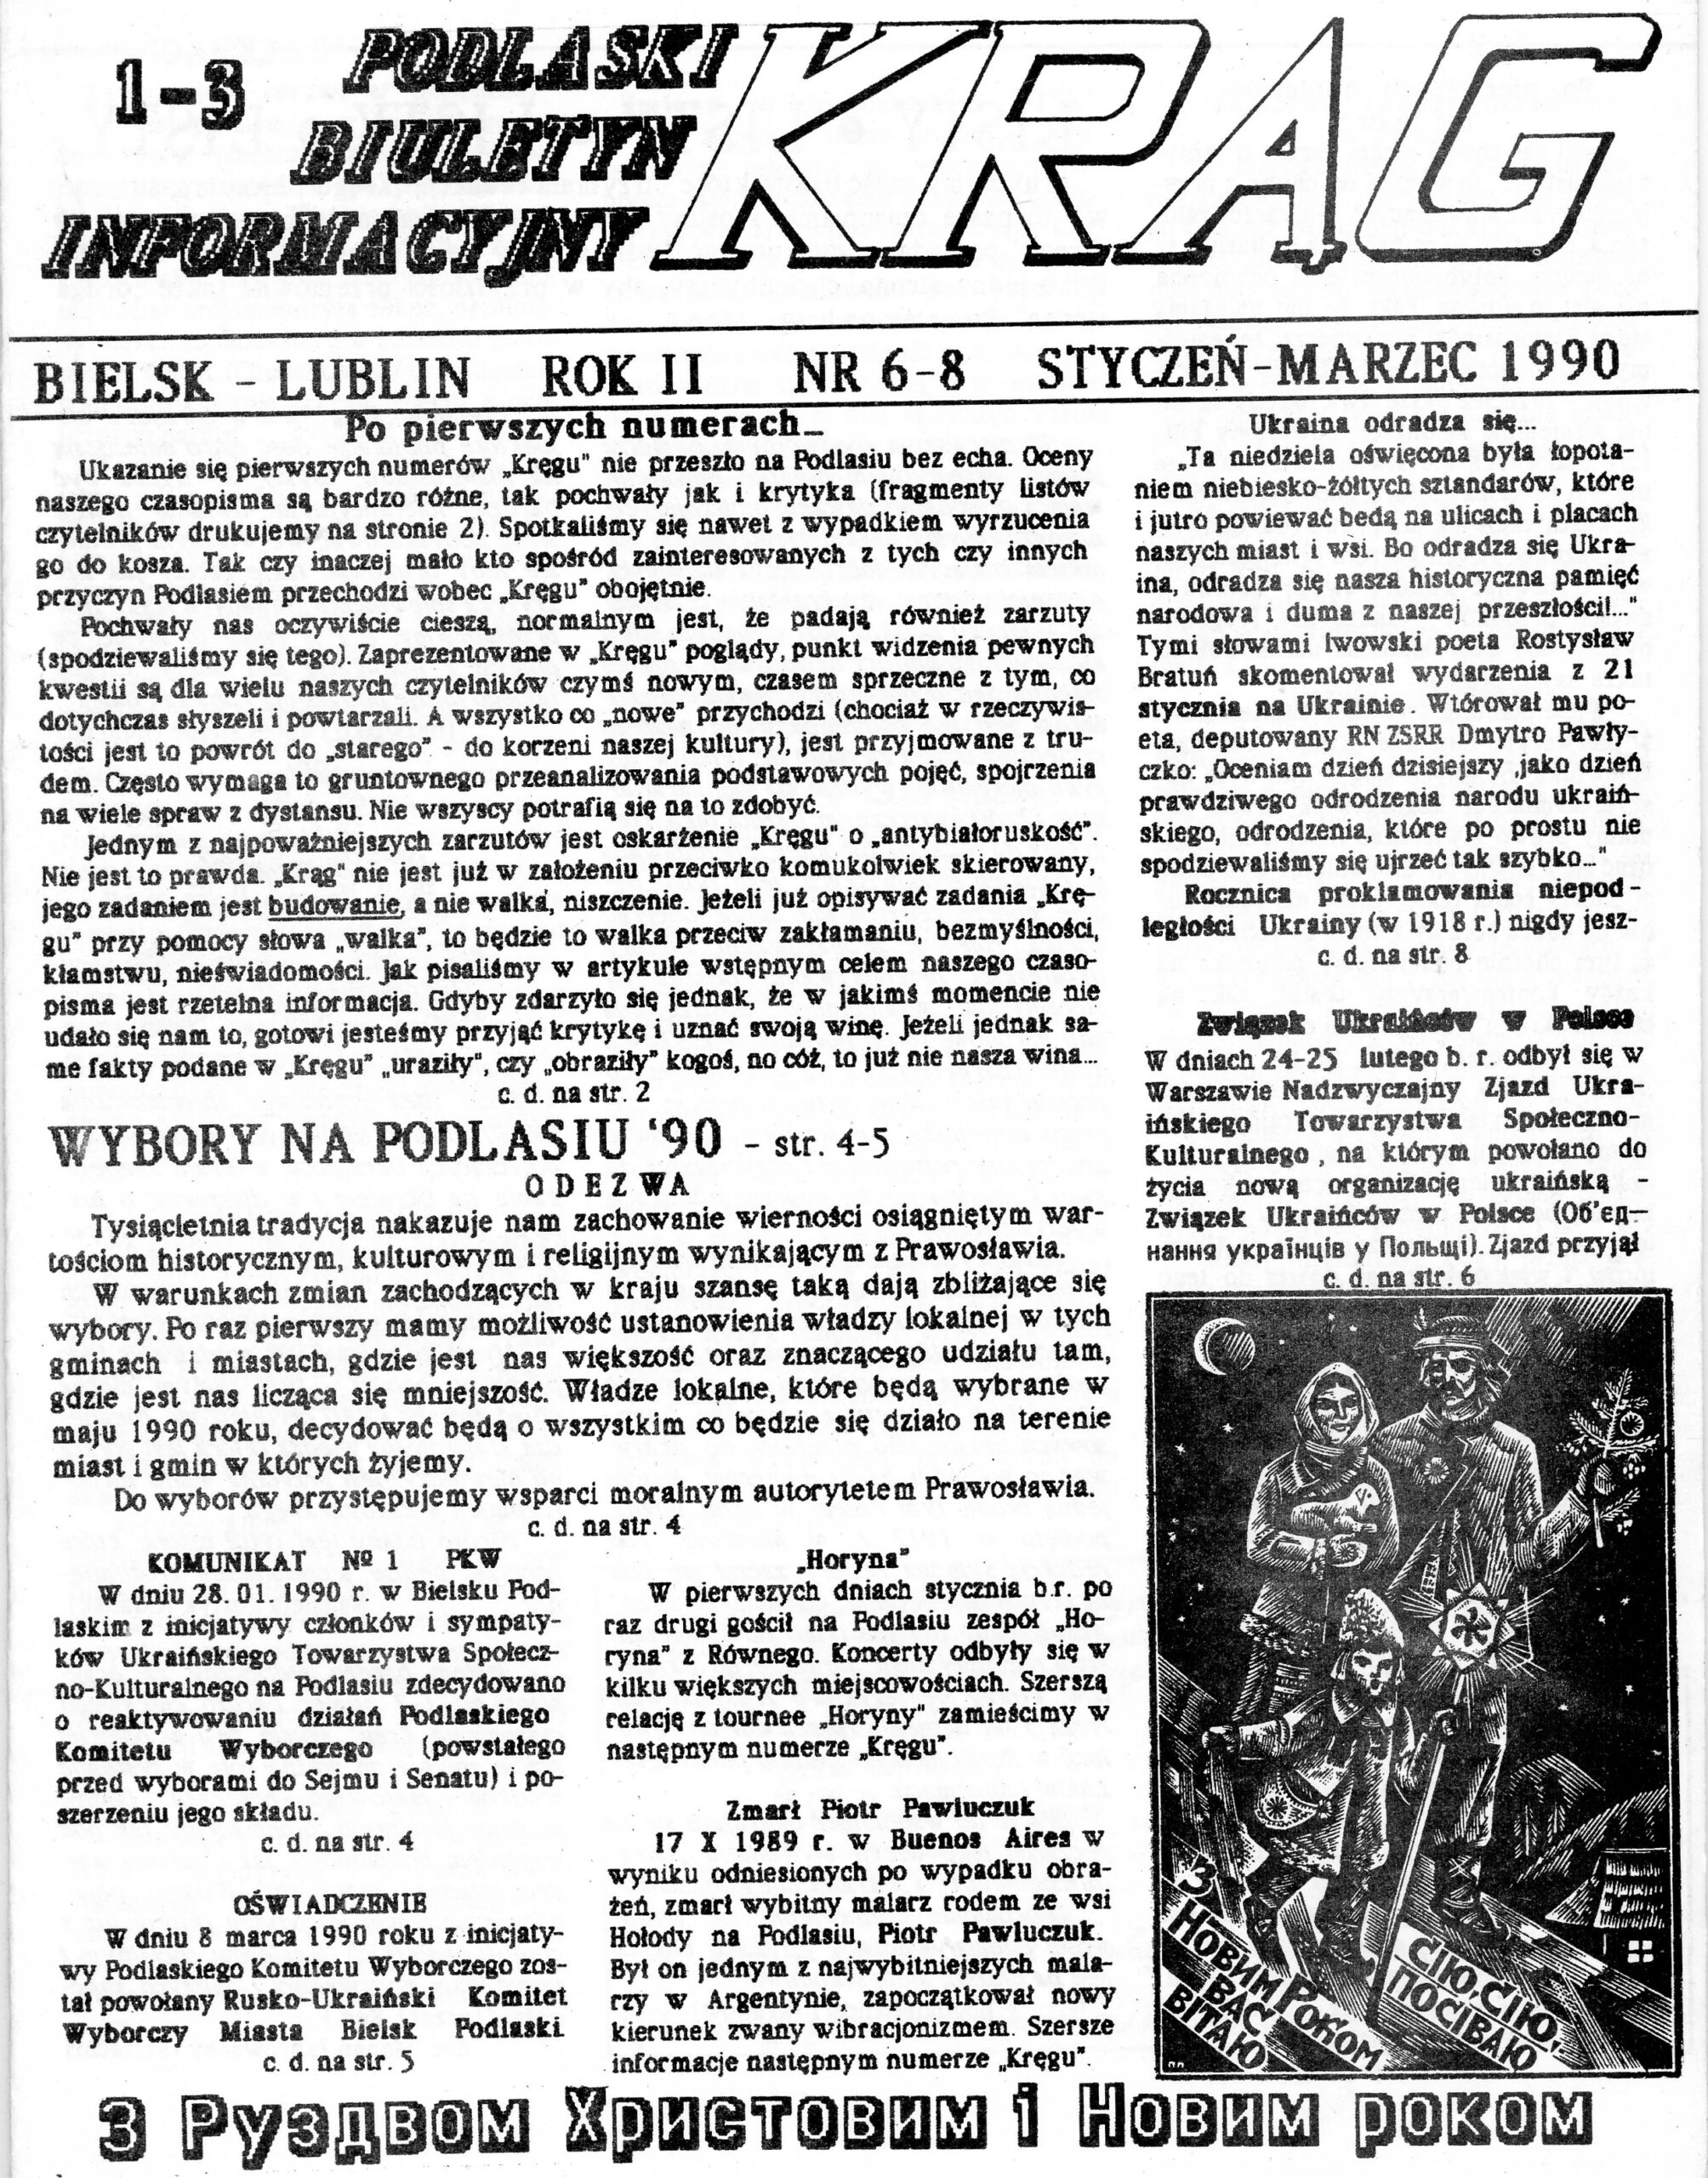 Podlaski Biuletyn Informacyjny KRĄG, Bielsk – Lublin, Nr 6-8, 1-3.1990 r.